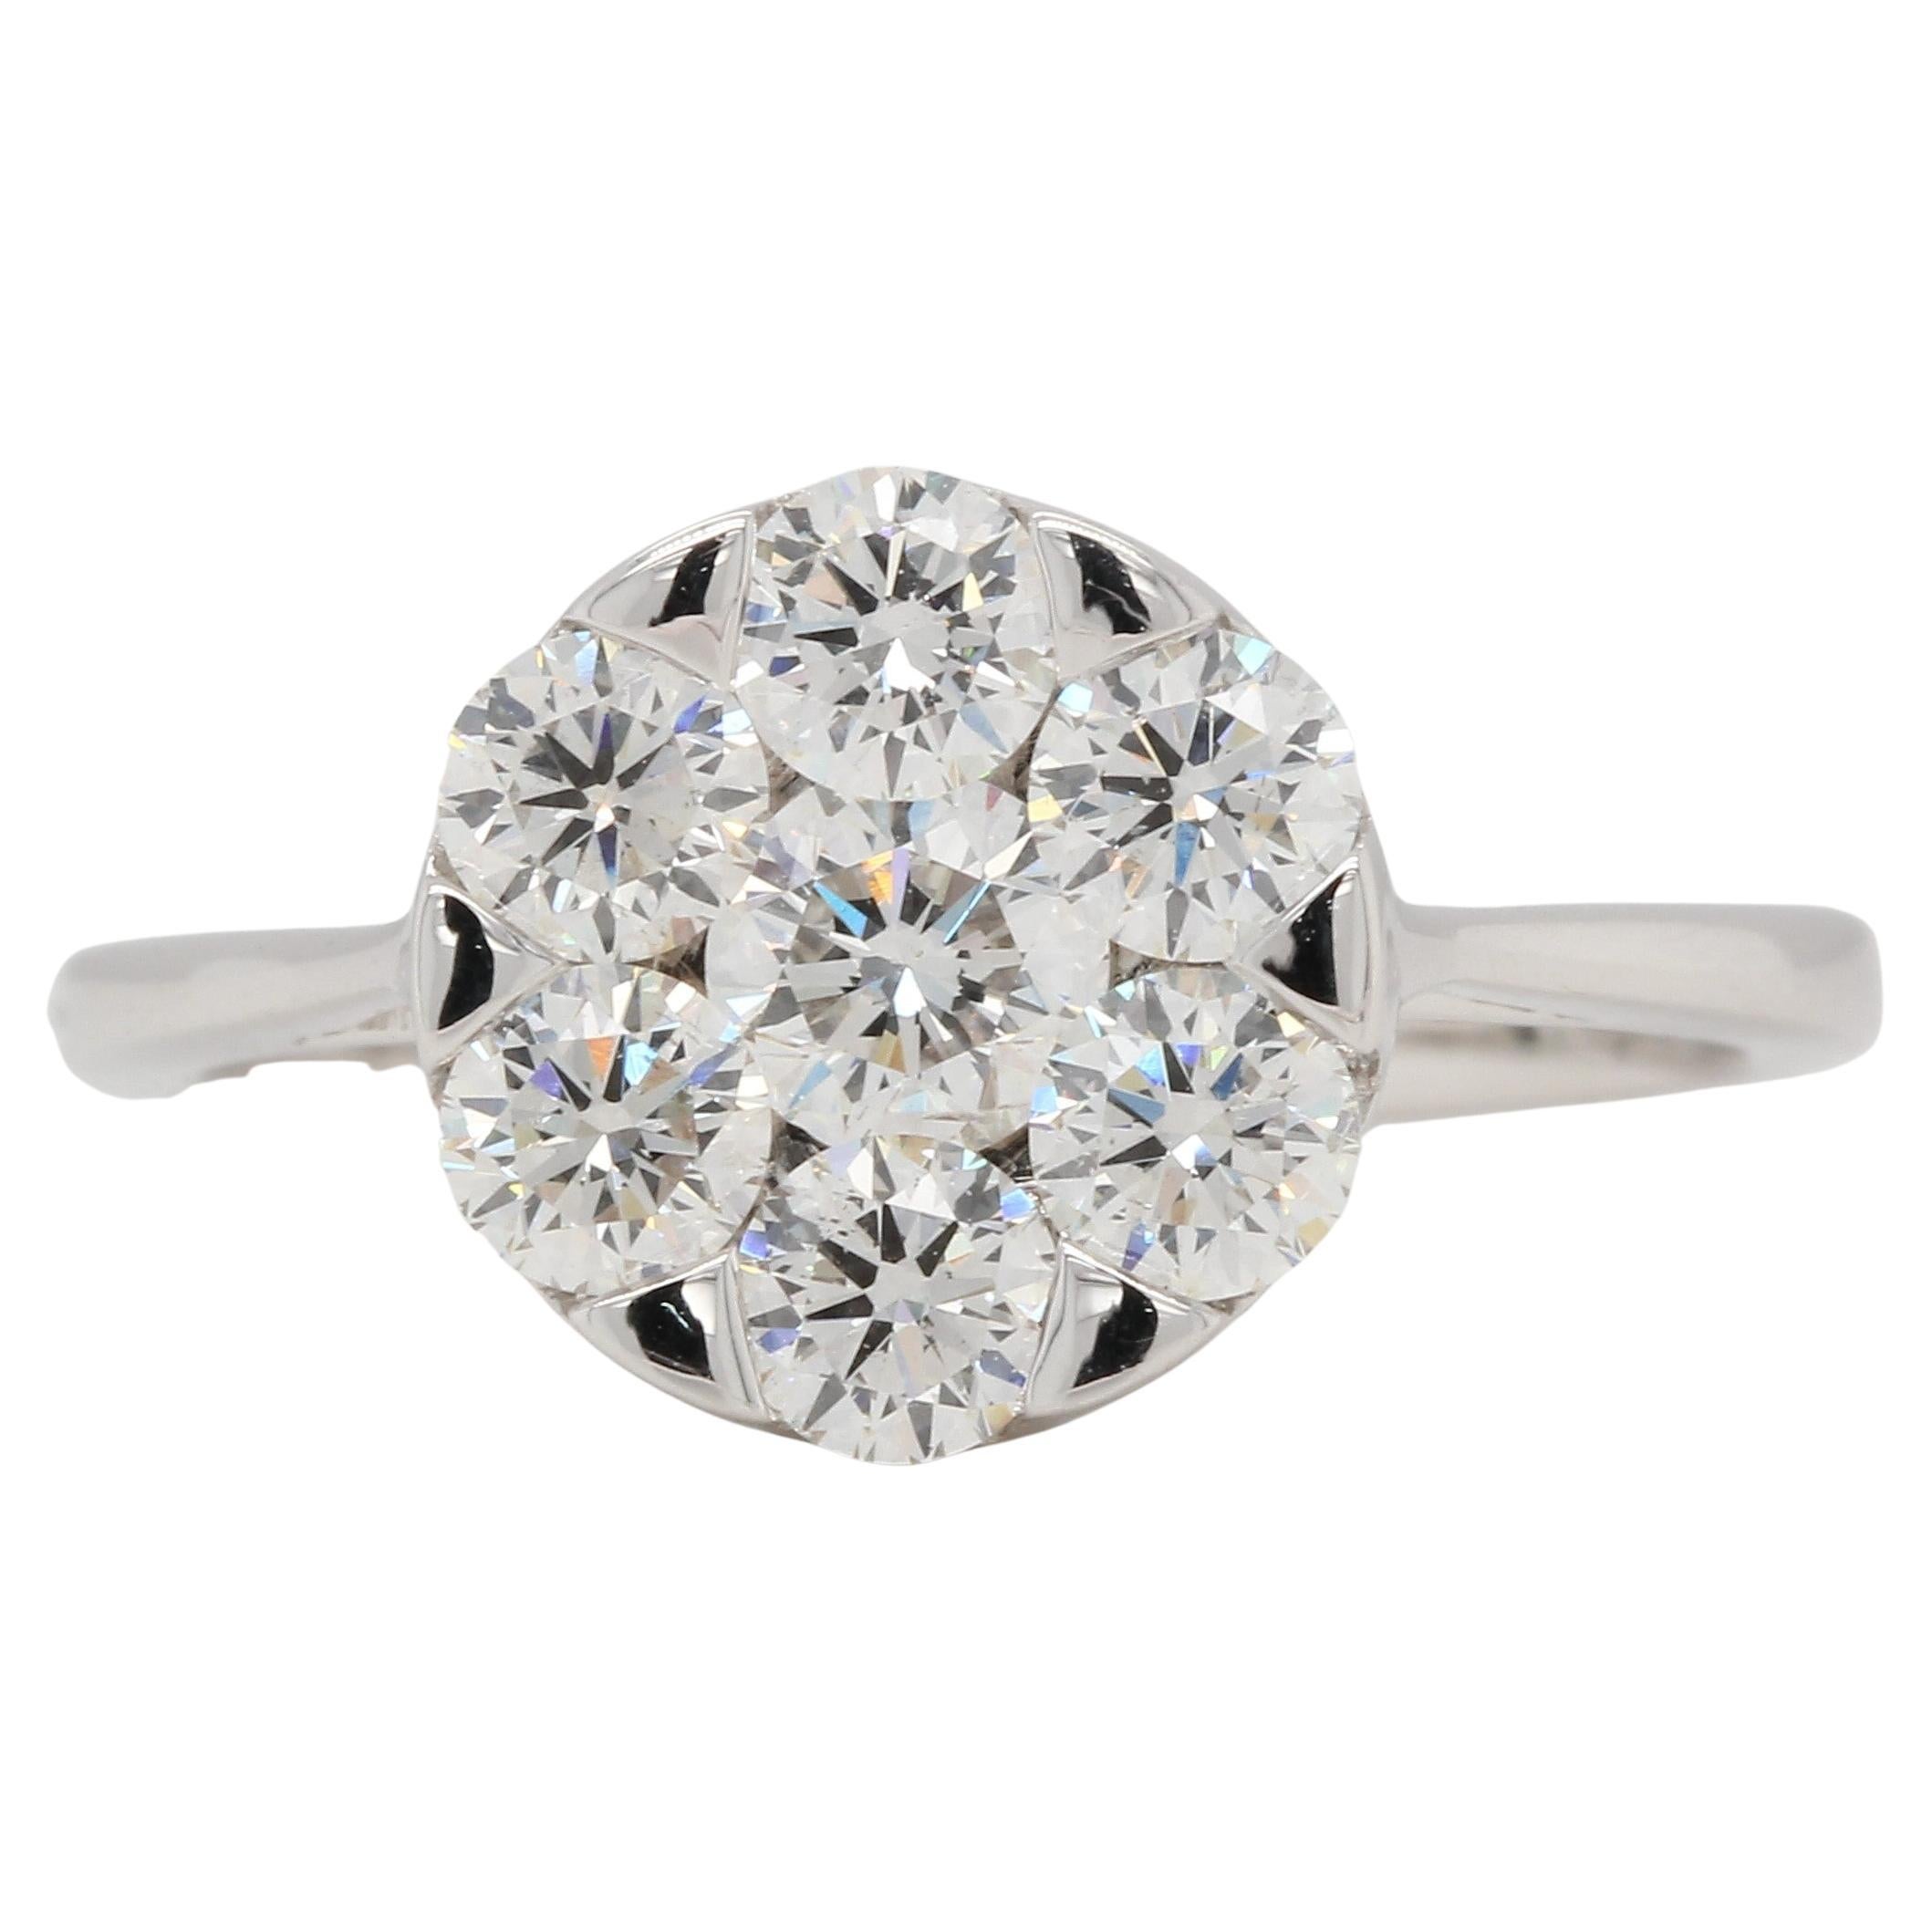 Dieser Diamantring wird sicherlich das Gesprächsthema Ihres nächsten gesellschaftlichen Ereignisses sein. Er besteht aus 1,45 Karat runden Diamanten und besticht durch sein atemberaubendes, modernes Design. Zeigen Sie Ihren tadellosen Geschmack in